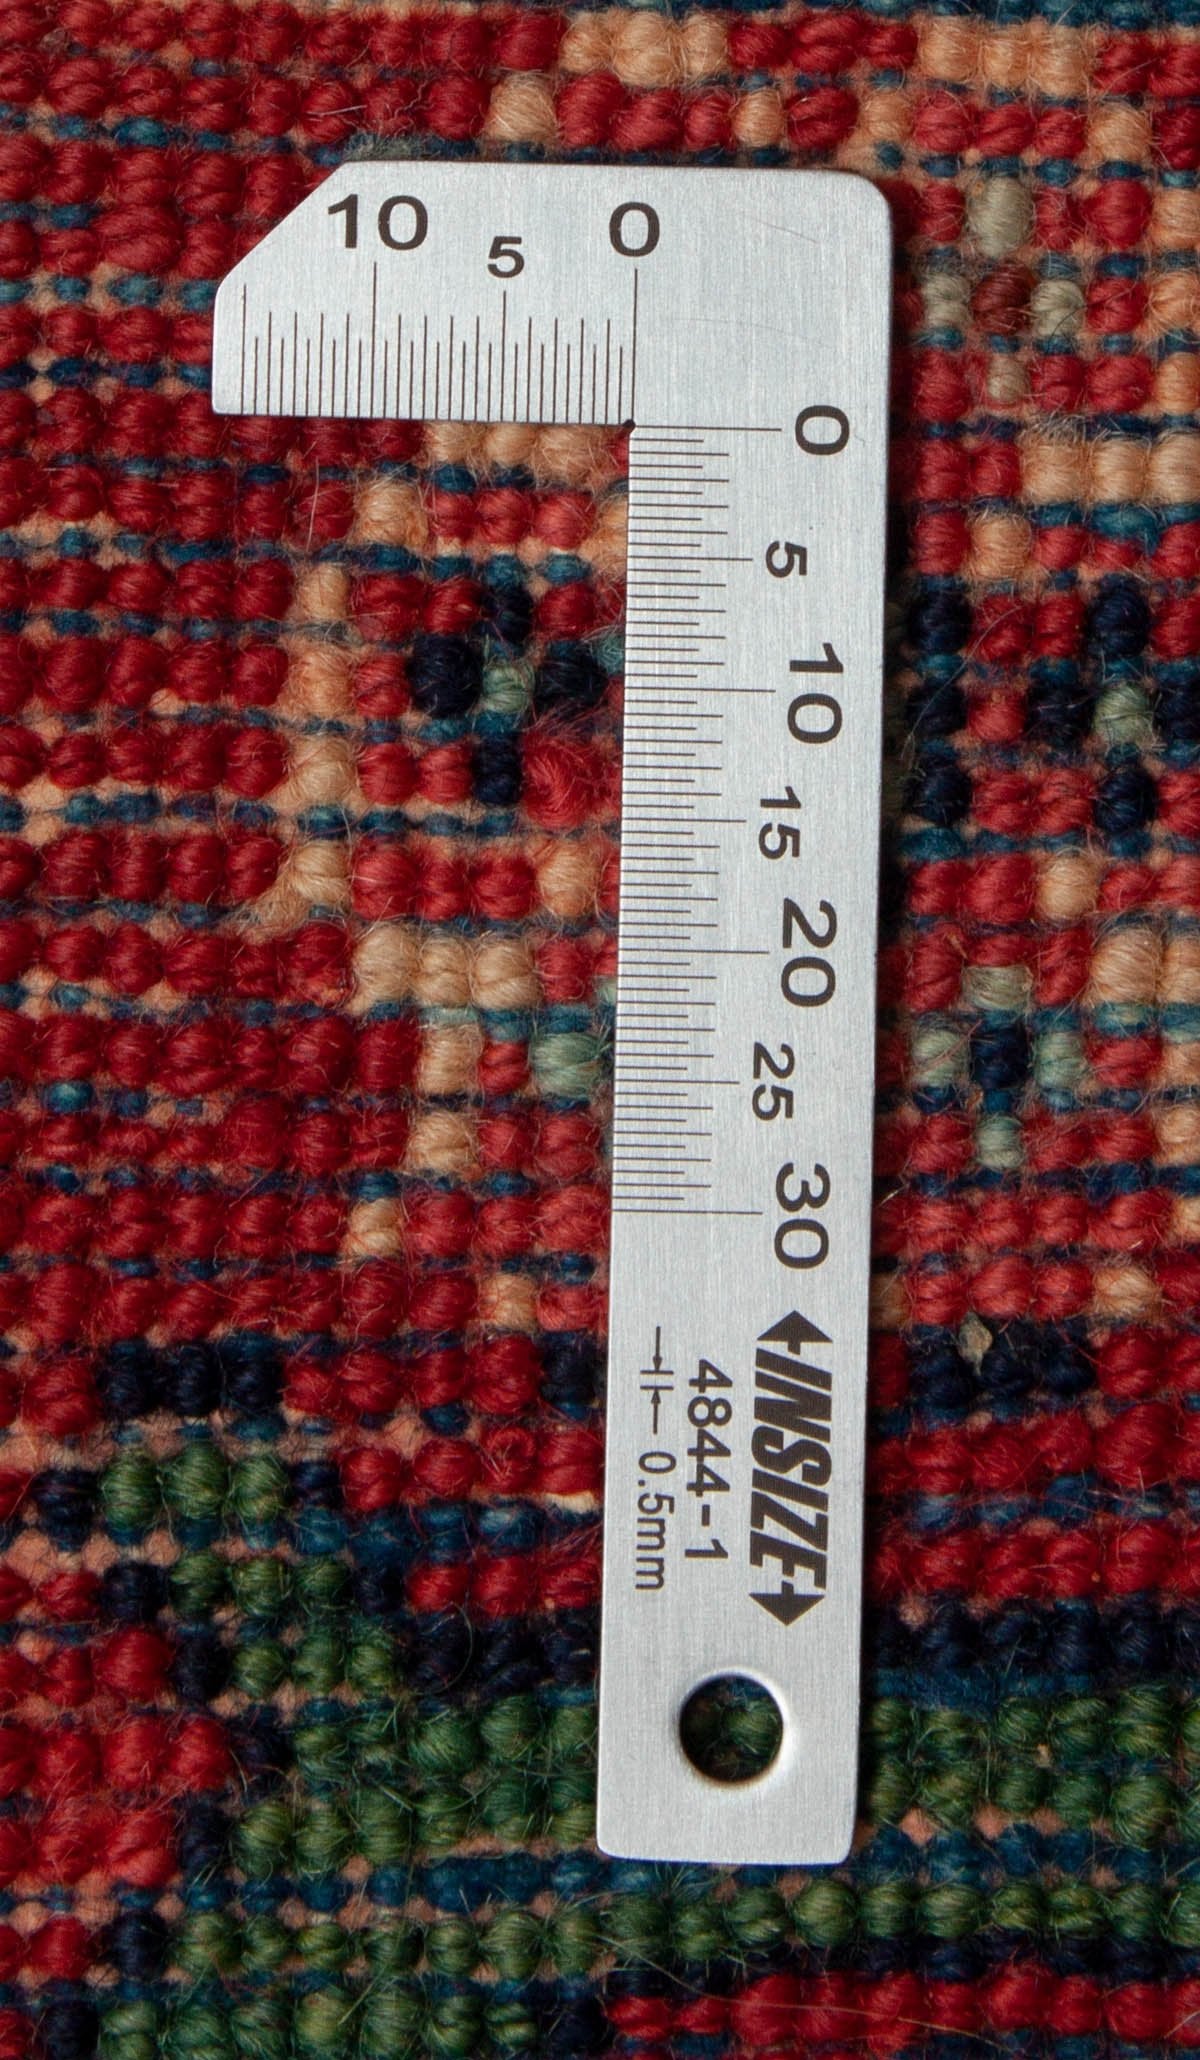 Eine Fotoaufnahme eines Varamin Teppichs.